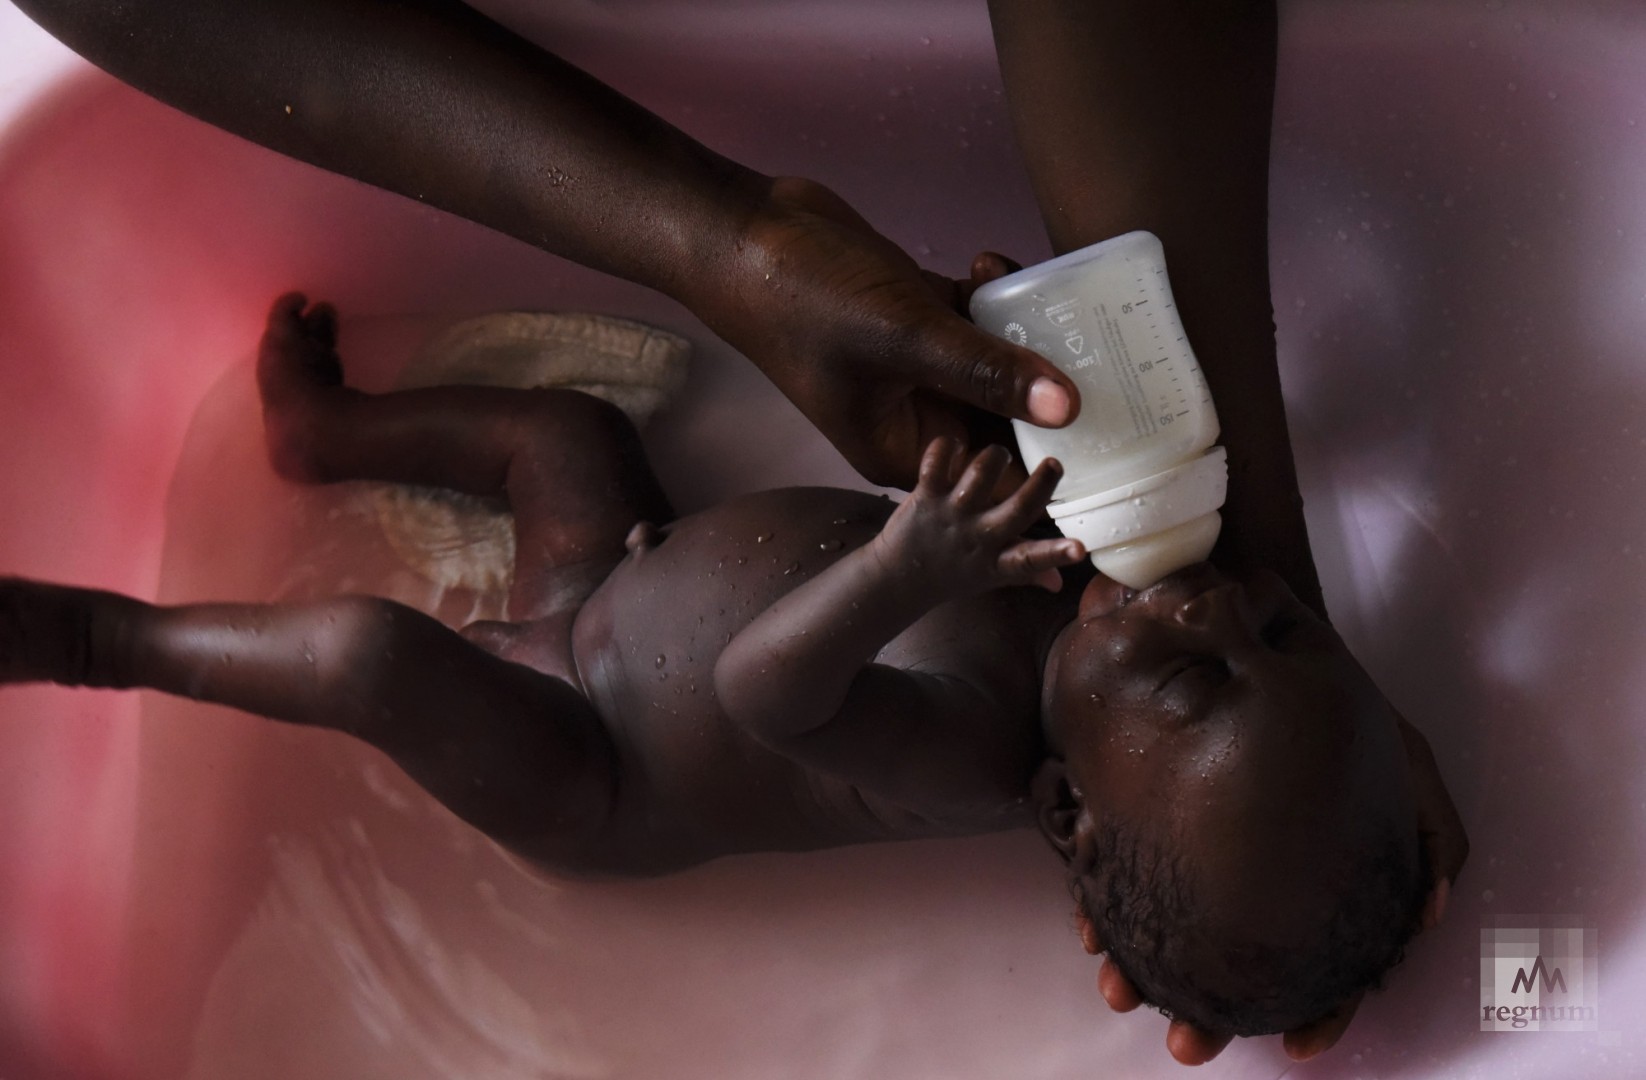 Купание Эммануэля. Ребёнок попал в детский дом в ноябре 2019 года, сразу после рождения. Window of Life, Масинди, Уганда